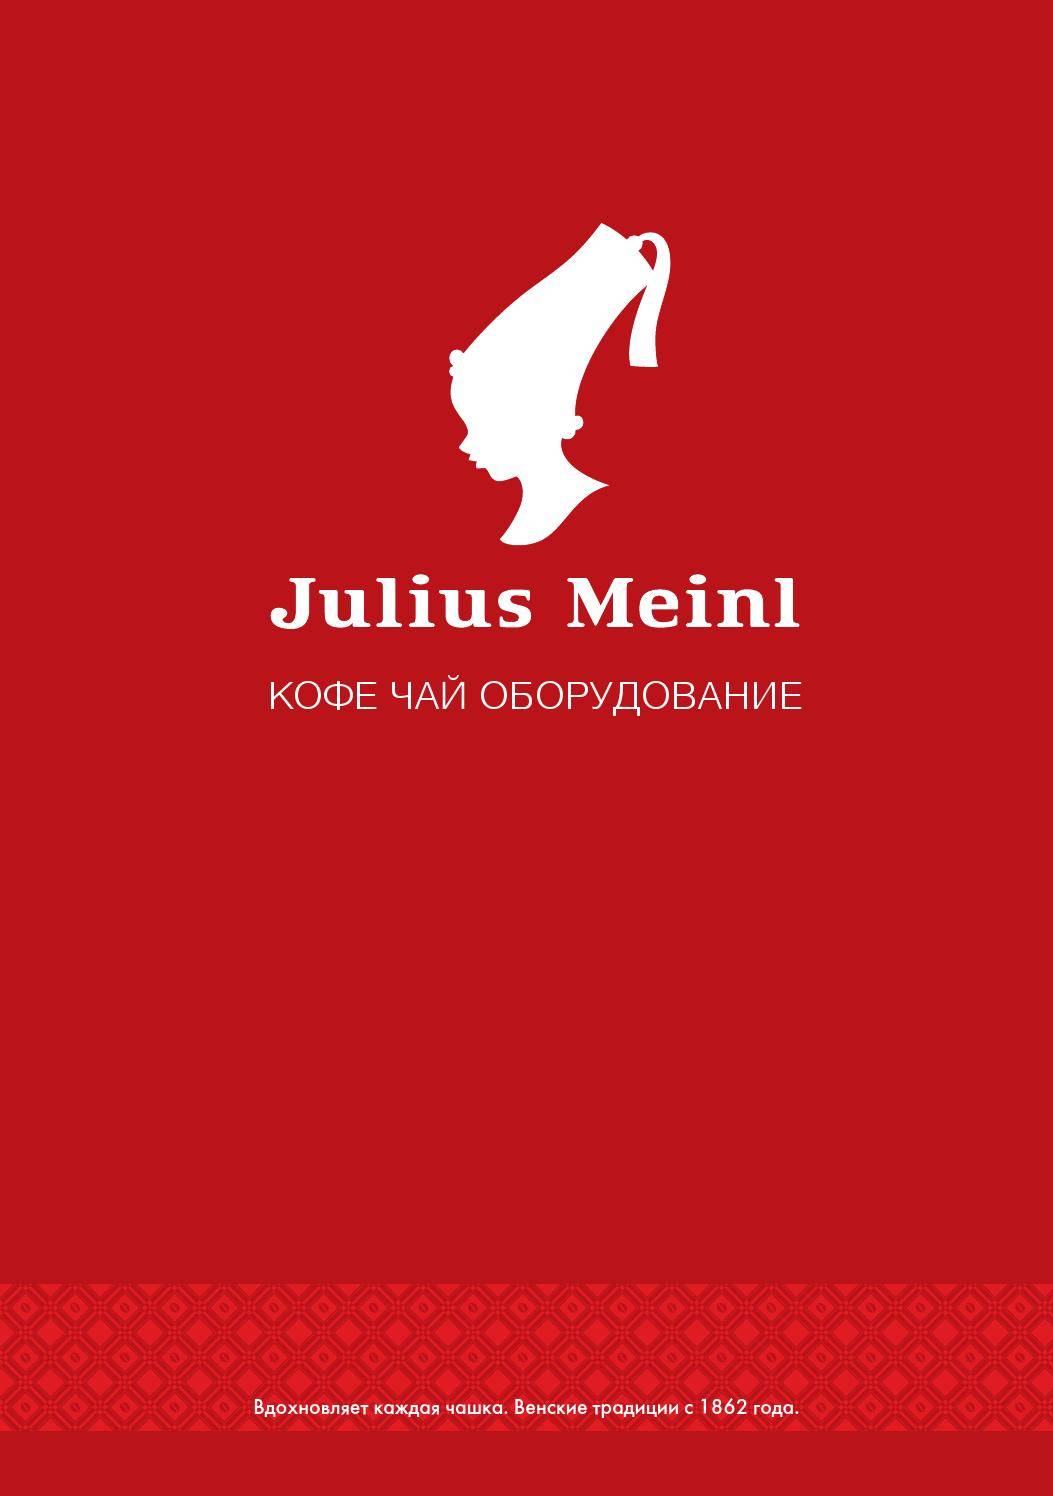 Кофе julius meinl: история бренда, ассортимент натурального, напитка в капсулах, отзывы